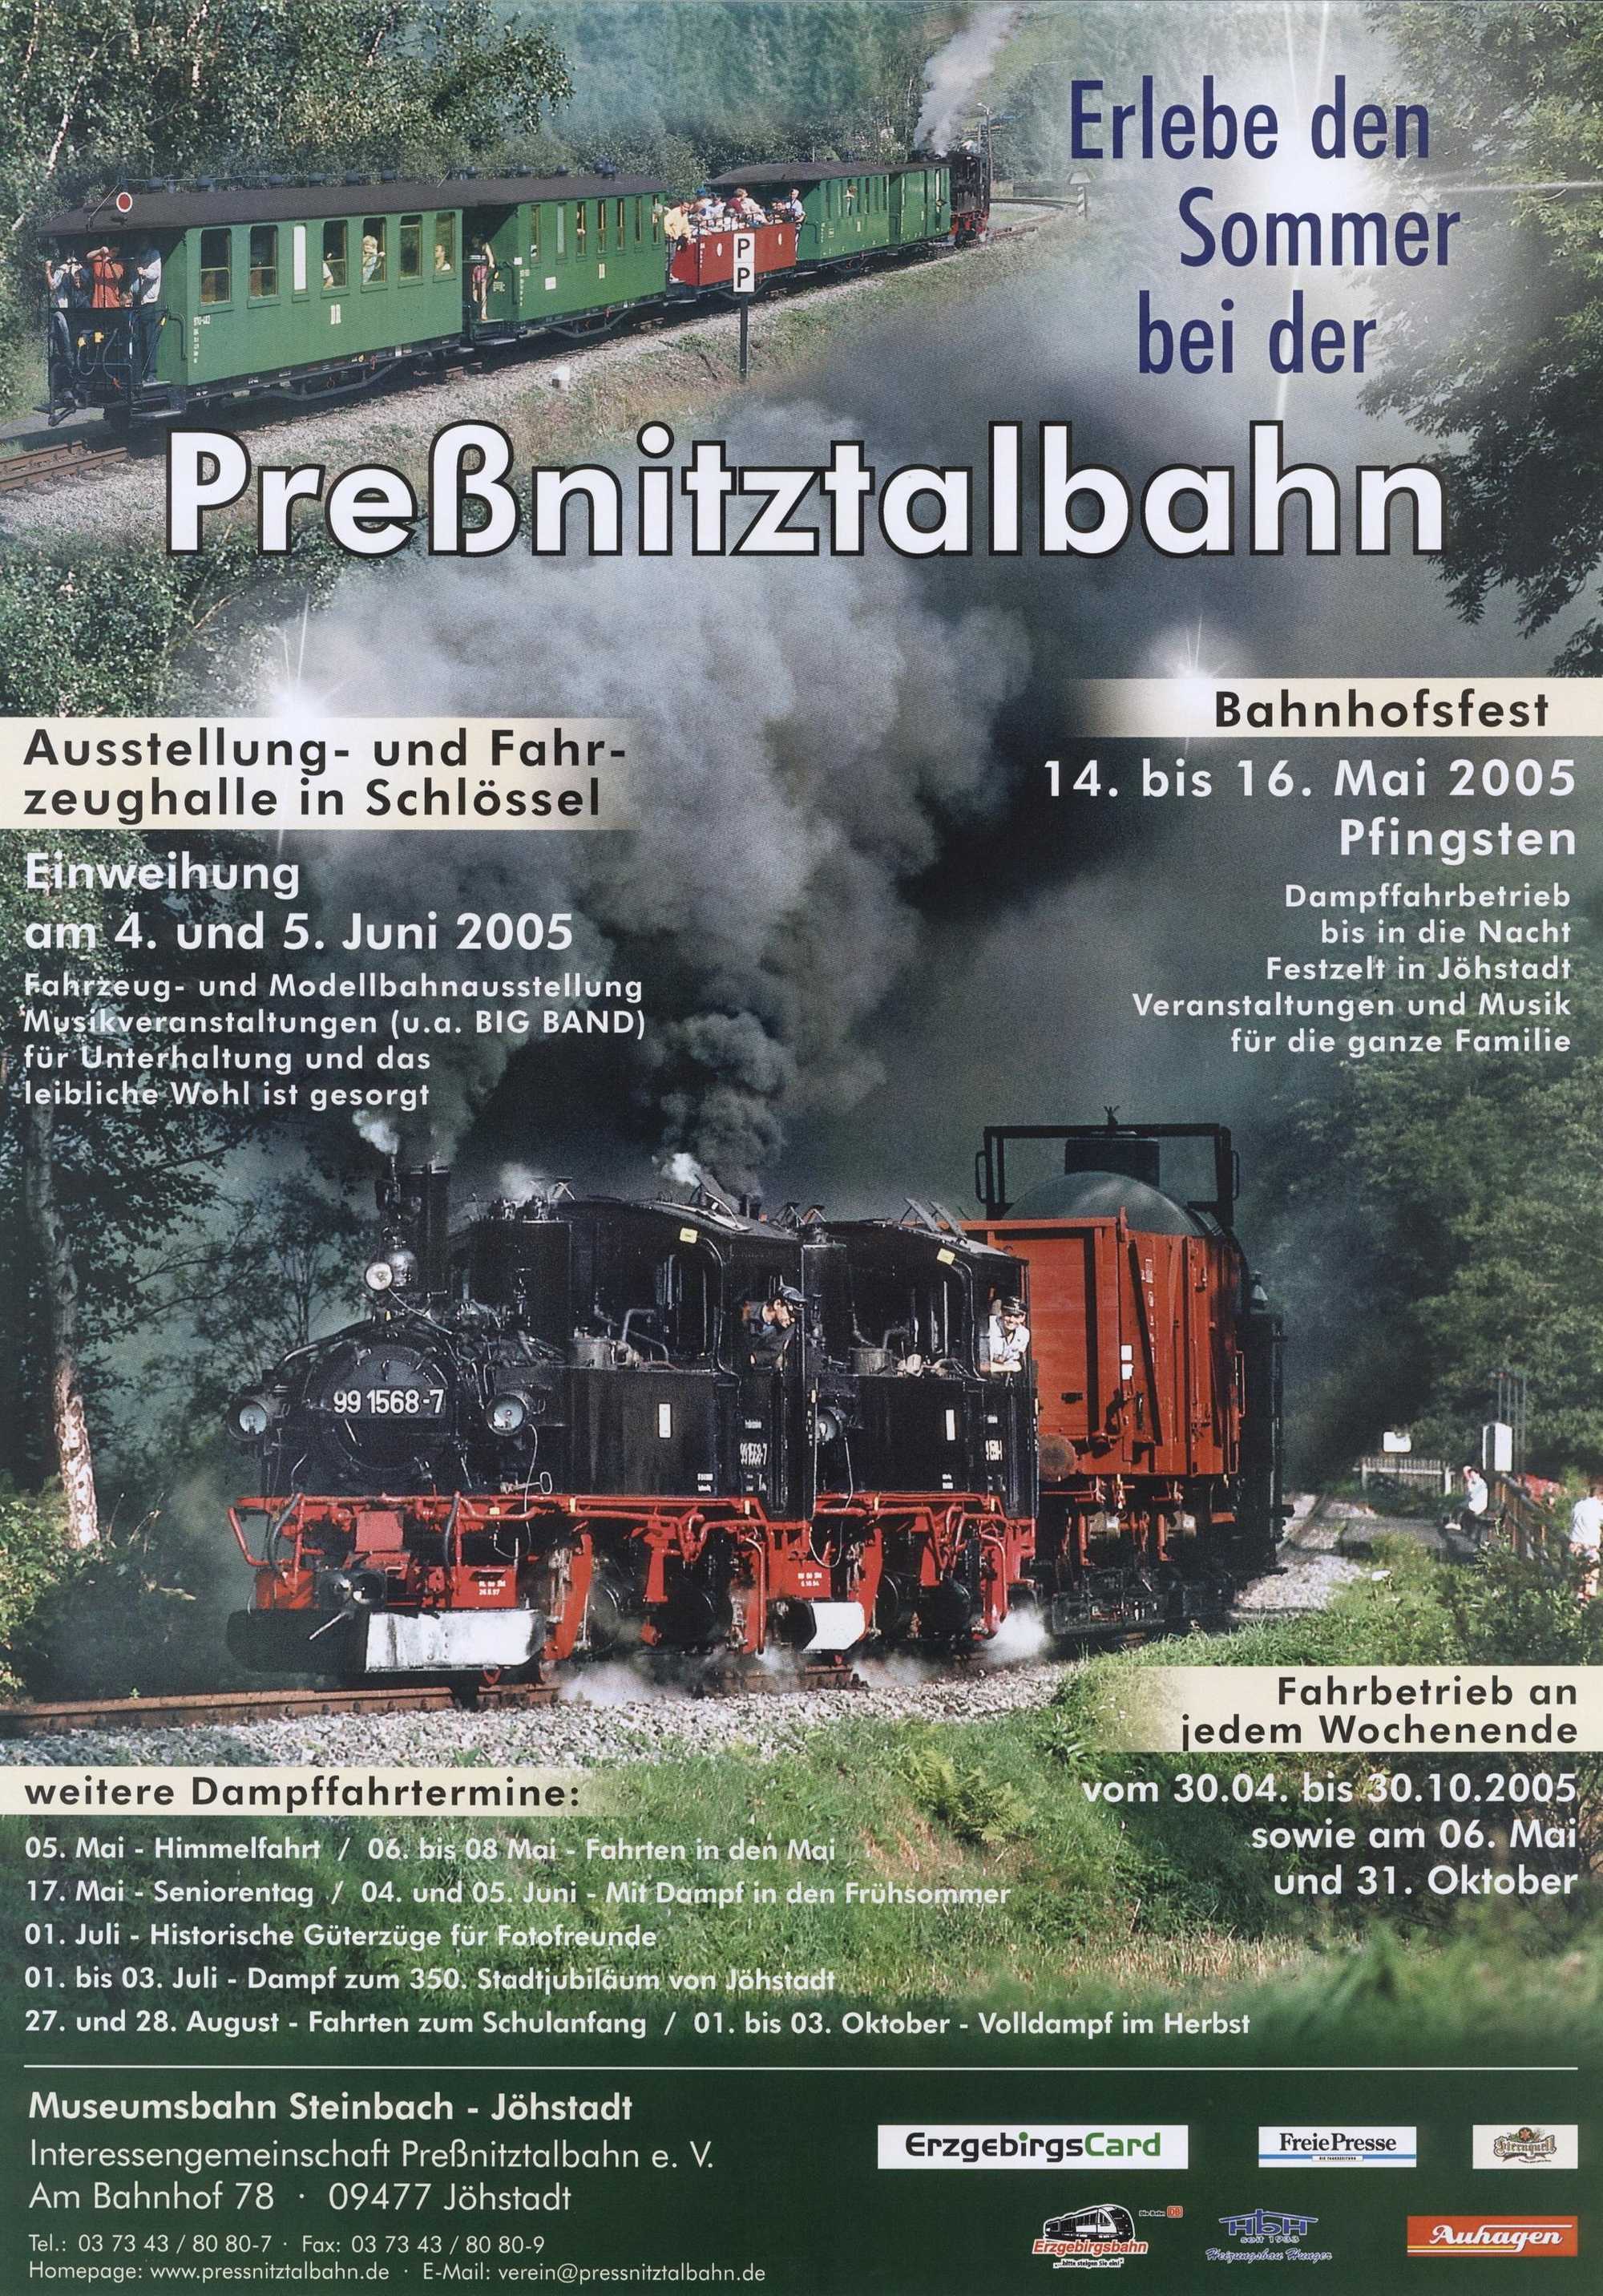 Poster der Preßnitztalbahn „Erlebe den Sommer bei der Preßnitztalbahn“